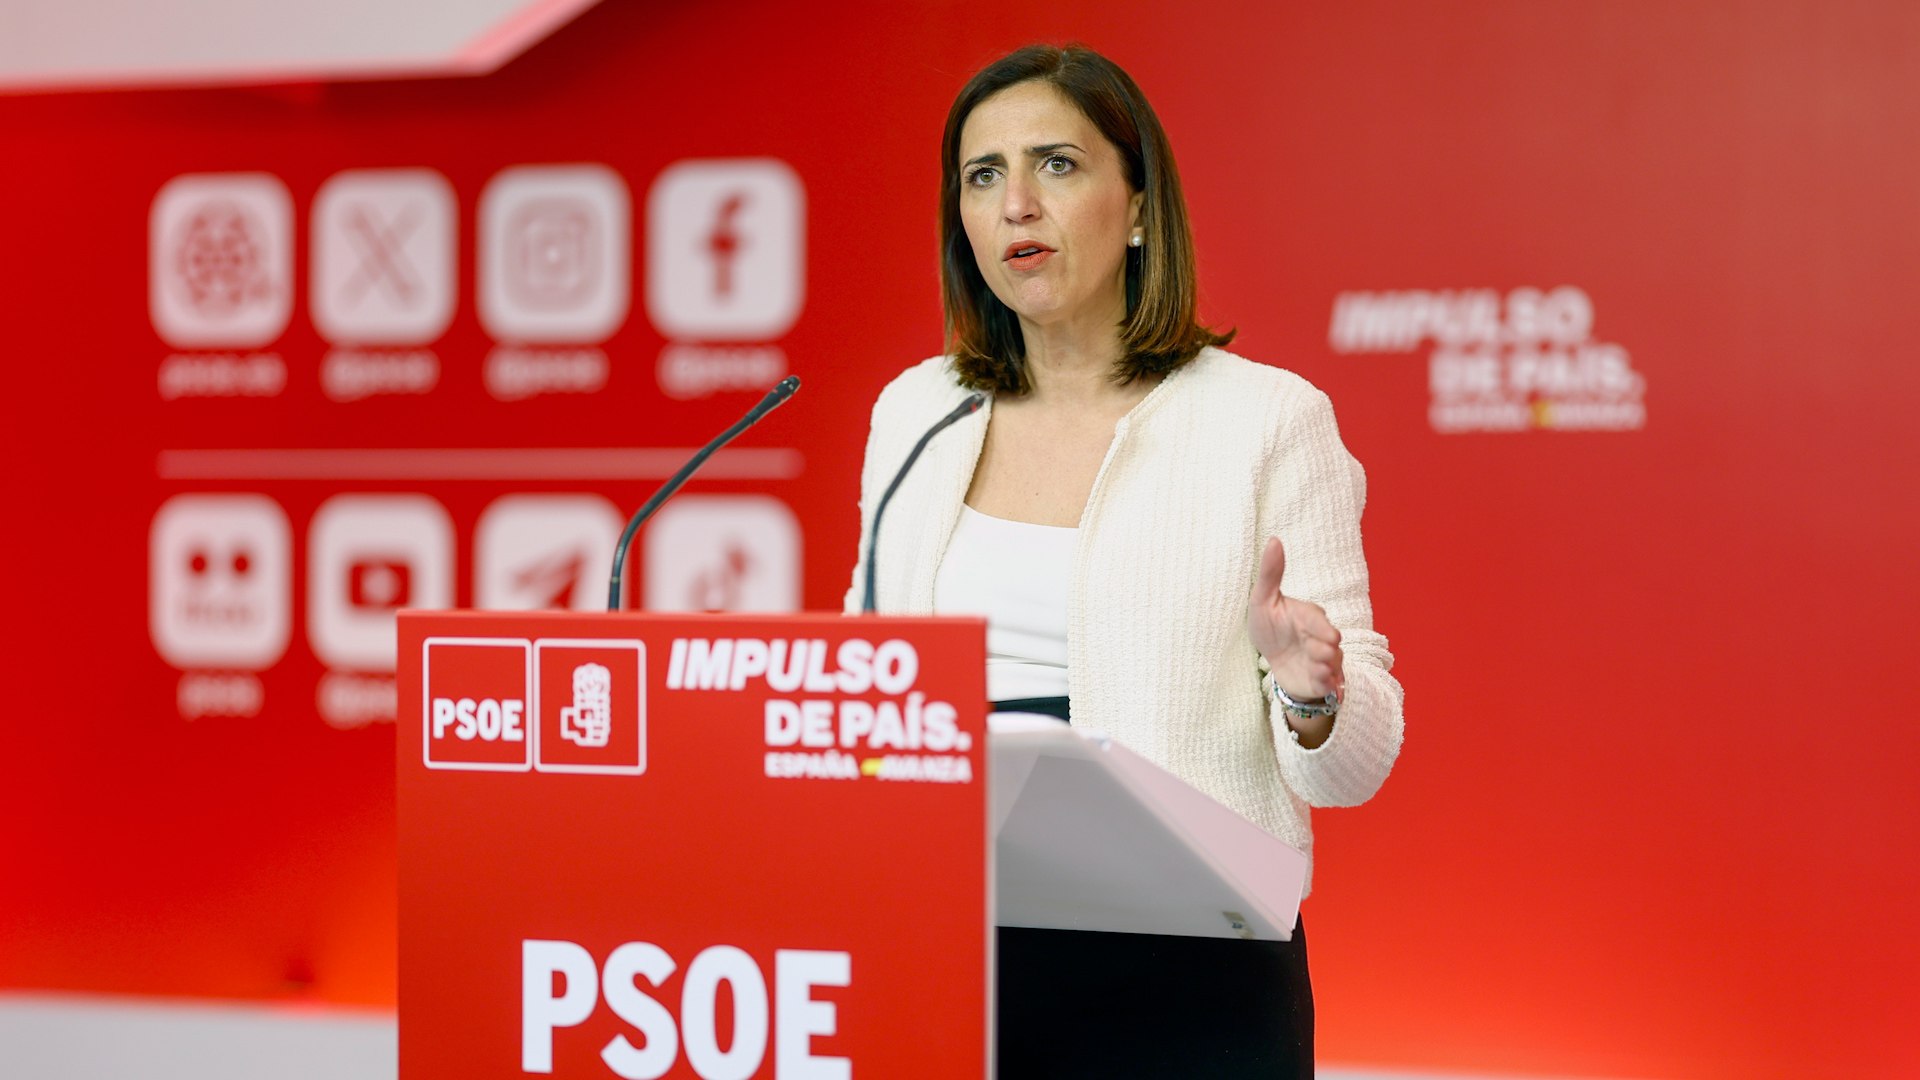 El PSOE disculpa el ataque de Puente y carga contra Milei: "Su respuesta es desproporcionada y fuera de lugar"